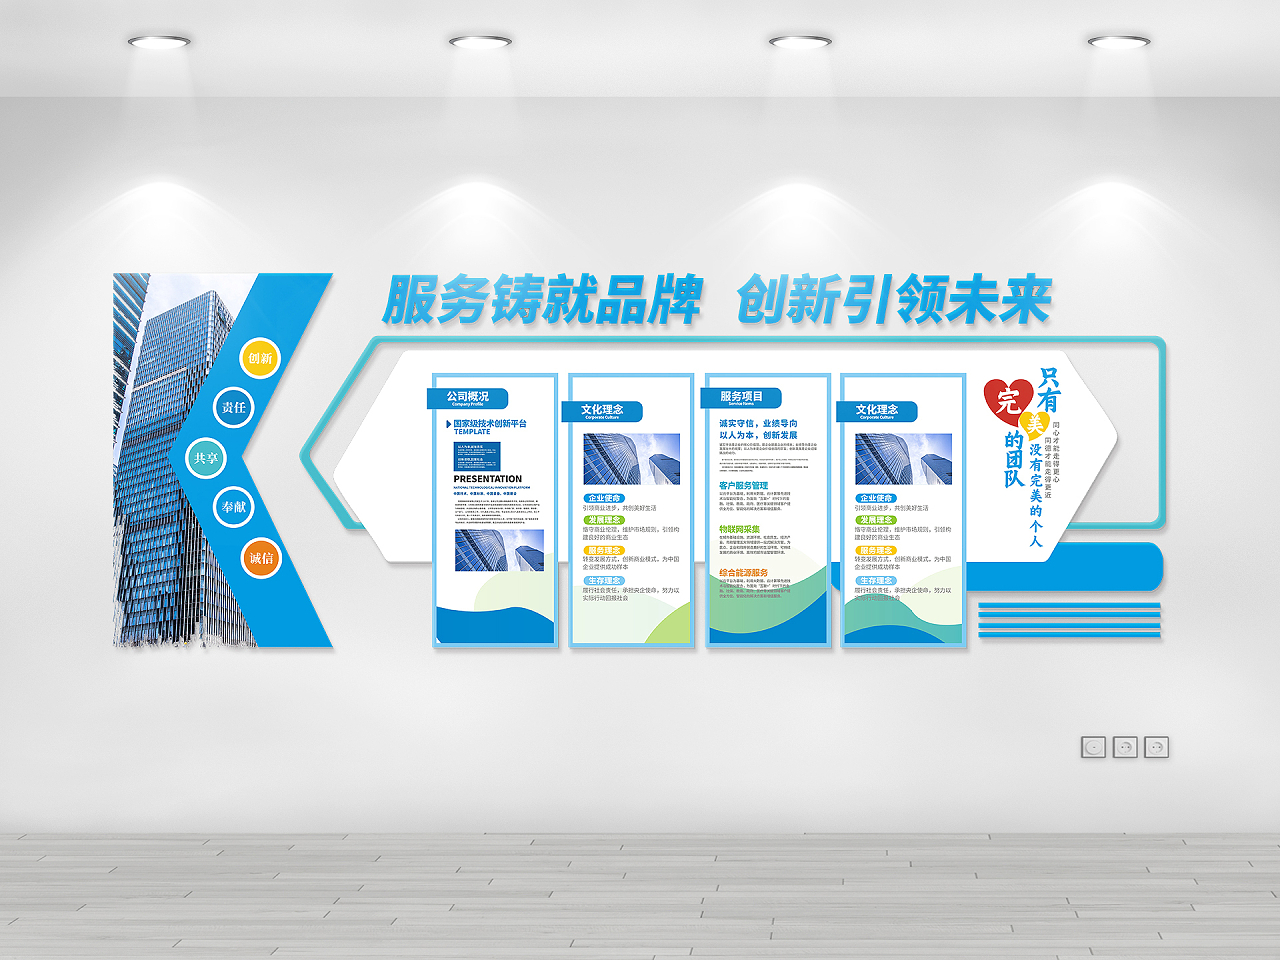 蓝色大气简约公司简介文化理念蓝色动感科技企业文化墙